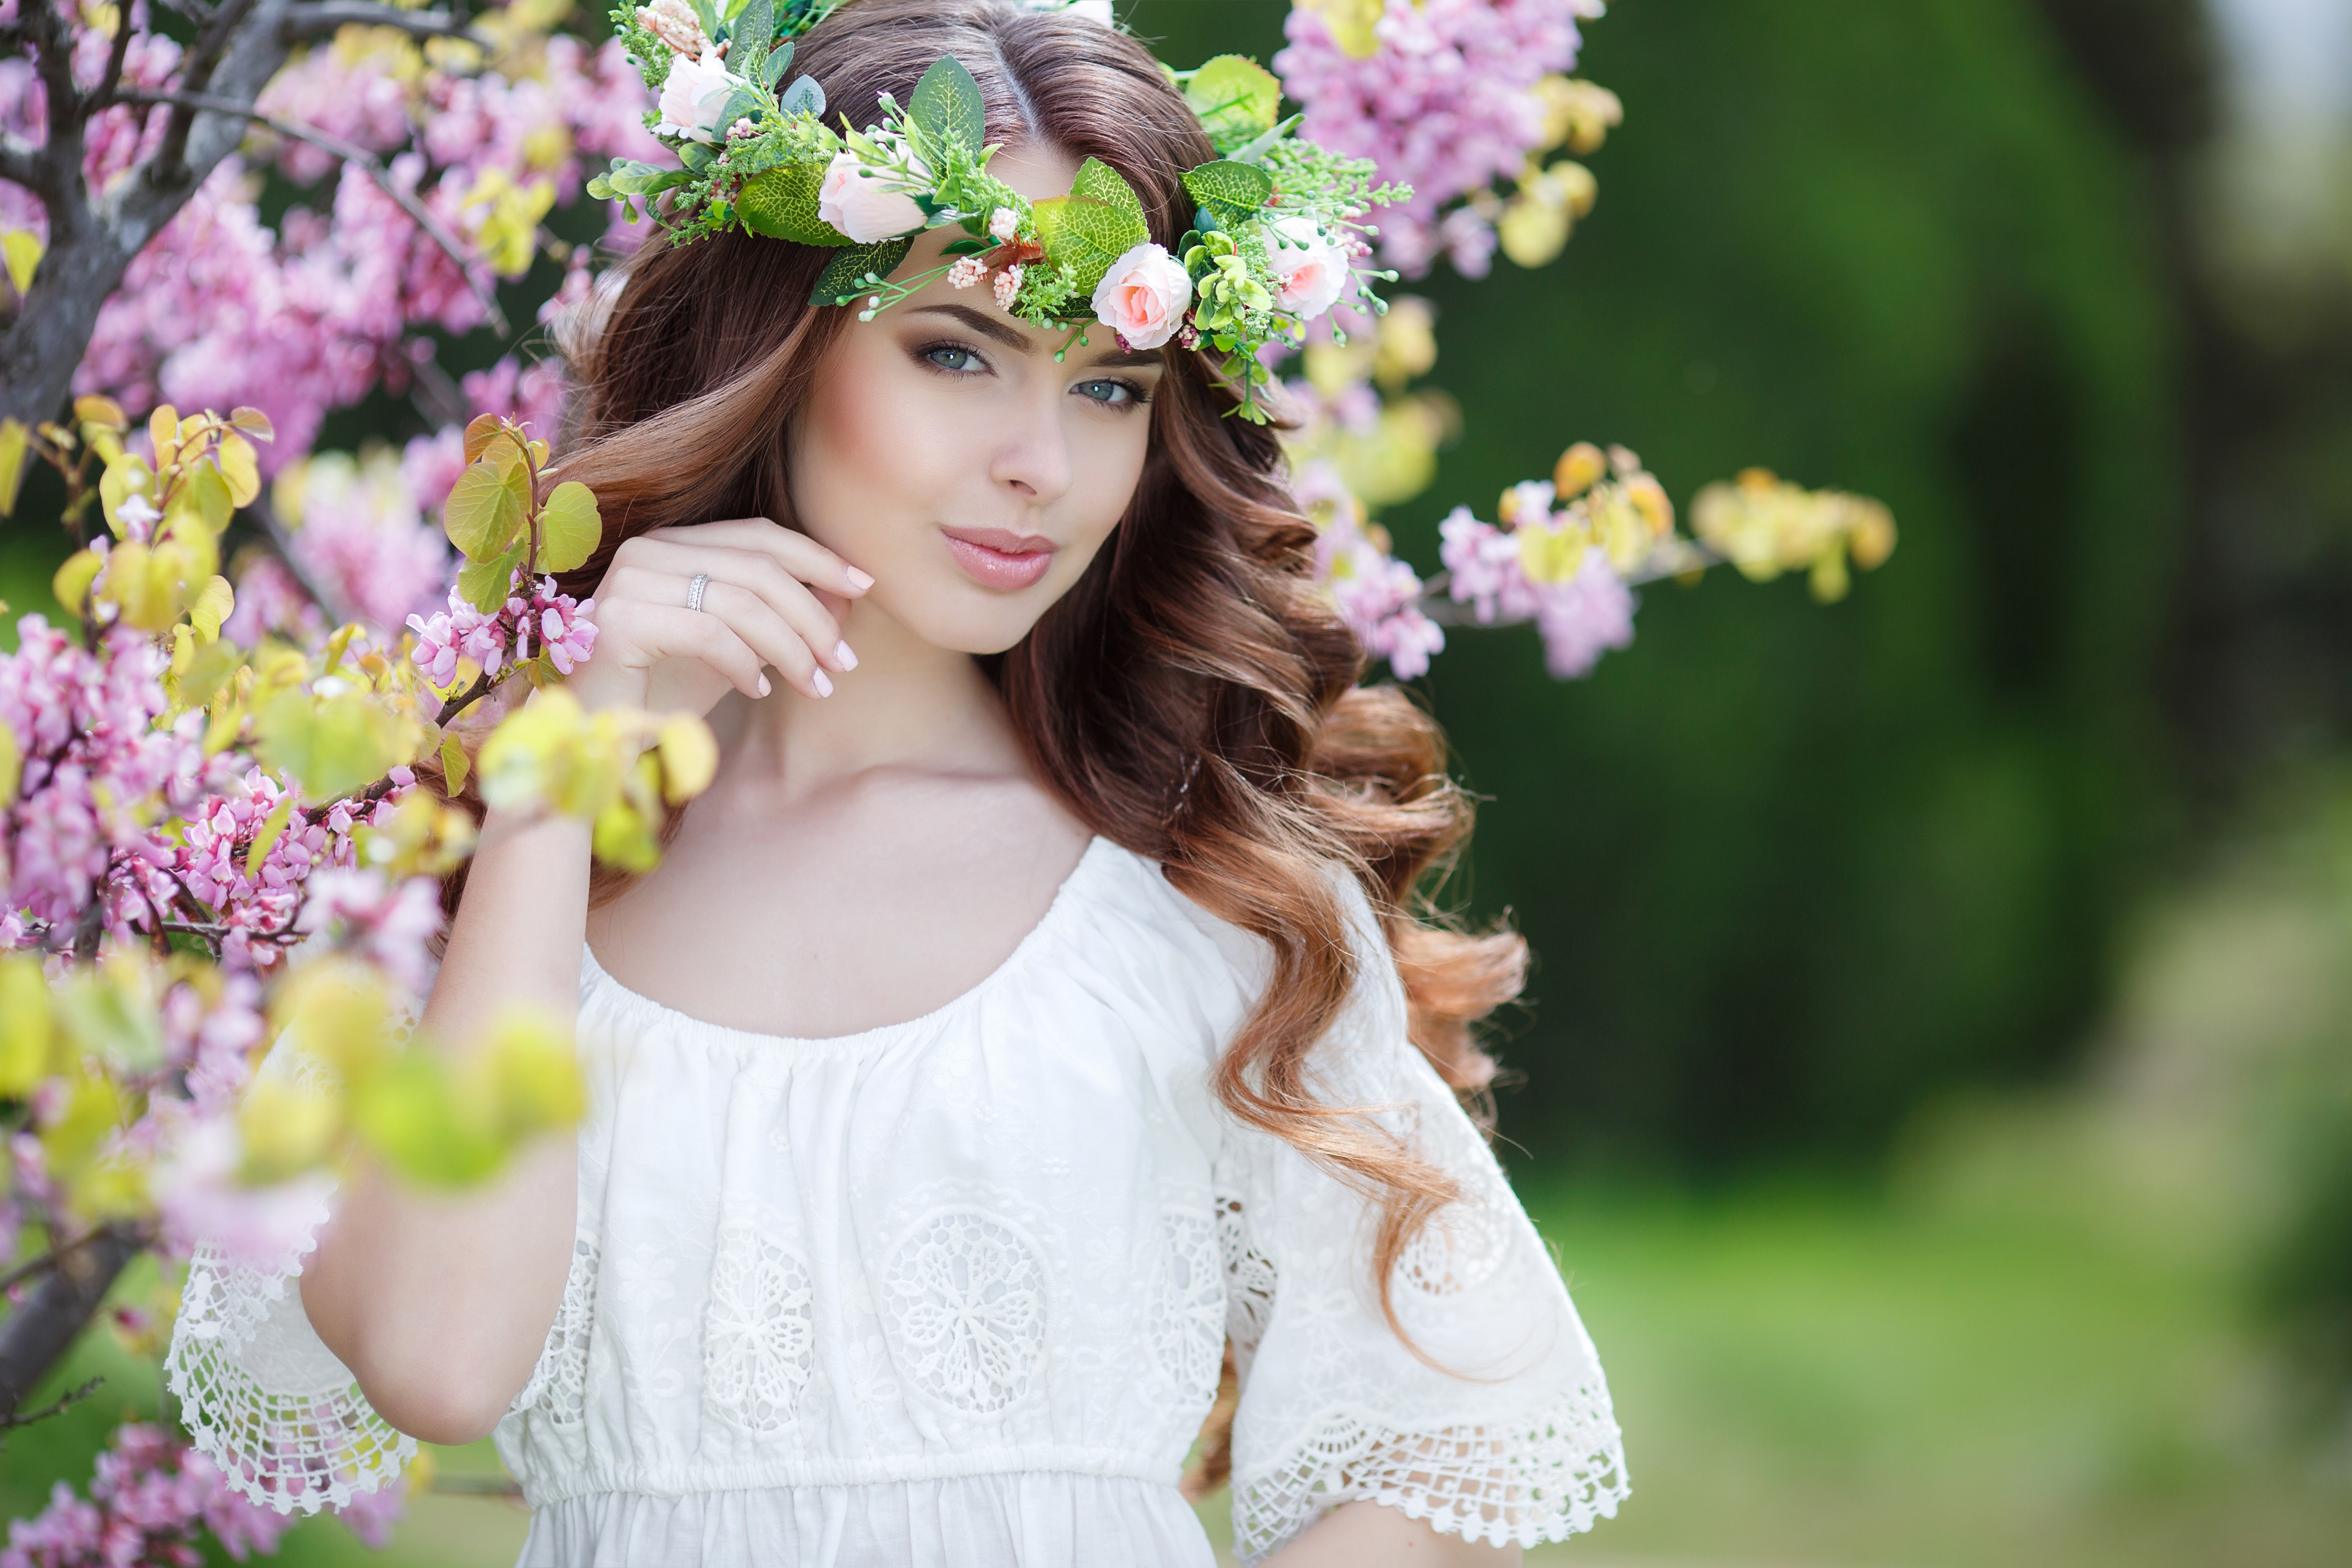 women, model, blossom, brunette, depth of field, white dress, wreath